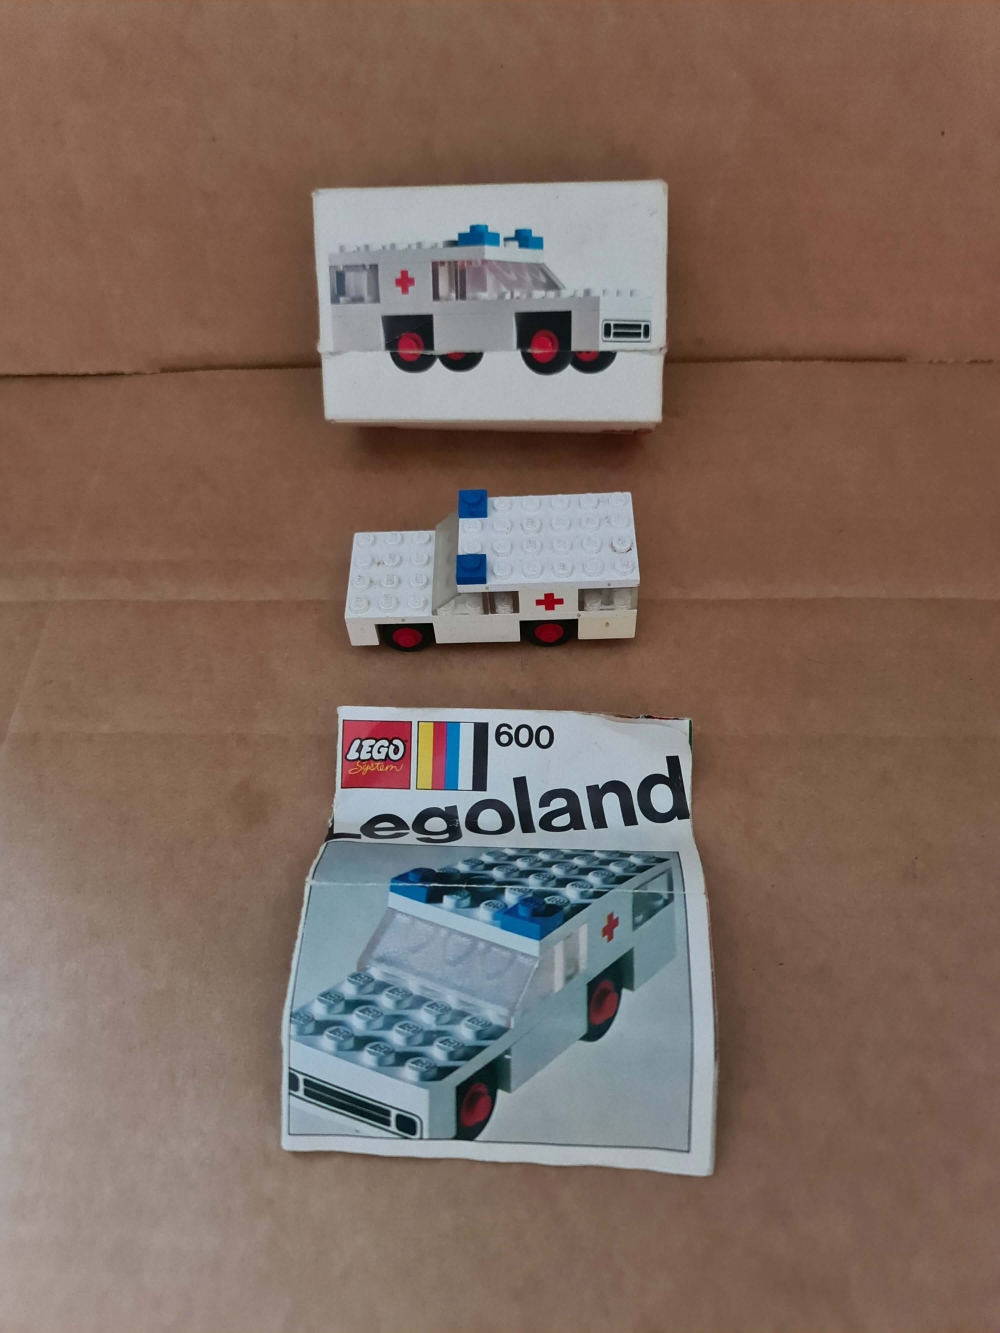 Sett 600 fra Lego : Legoland serien.
Fint sett. Noe nyanseforskjeller.
Komplett med manual og eske.